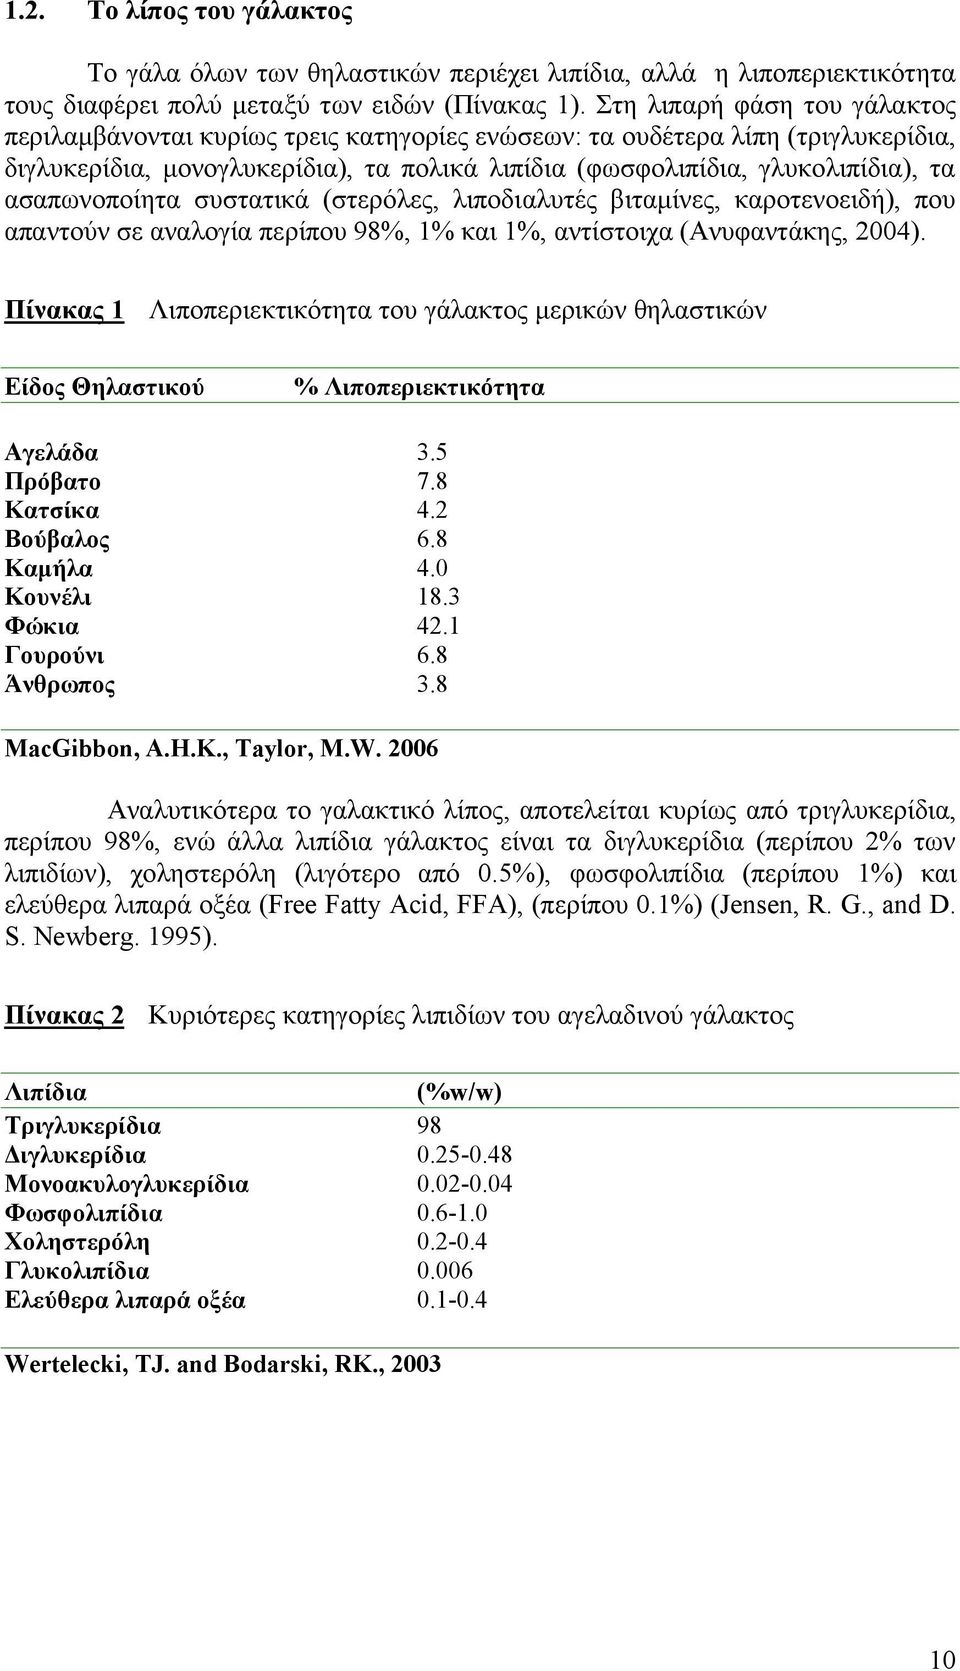 ασαπωνοποίητα συστατικά (στερόλες, λιποδι αλυτές βιταμίνες, καροτενοειδή), που απαντούν σε αναλογία περίπου 98%, 1% και 1%, αντίστοιχα (Ανυφαντάκης, 2004).